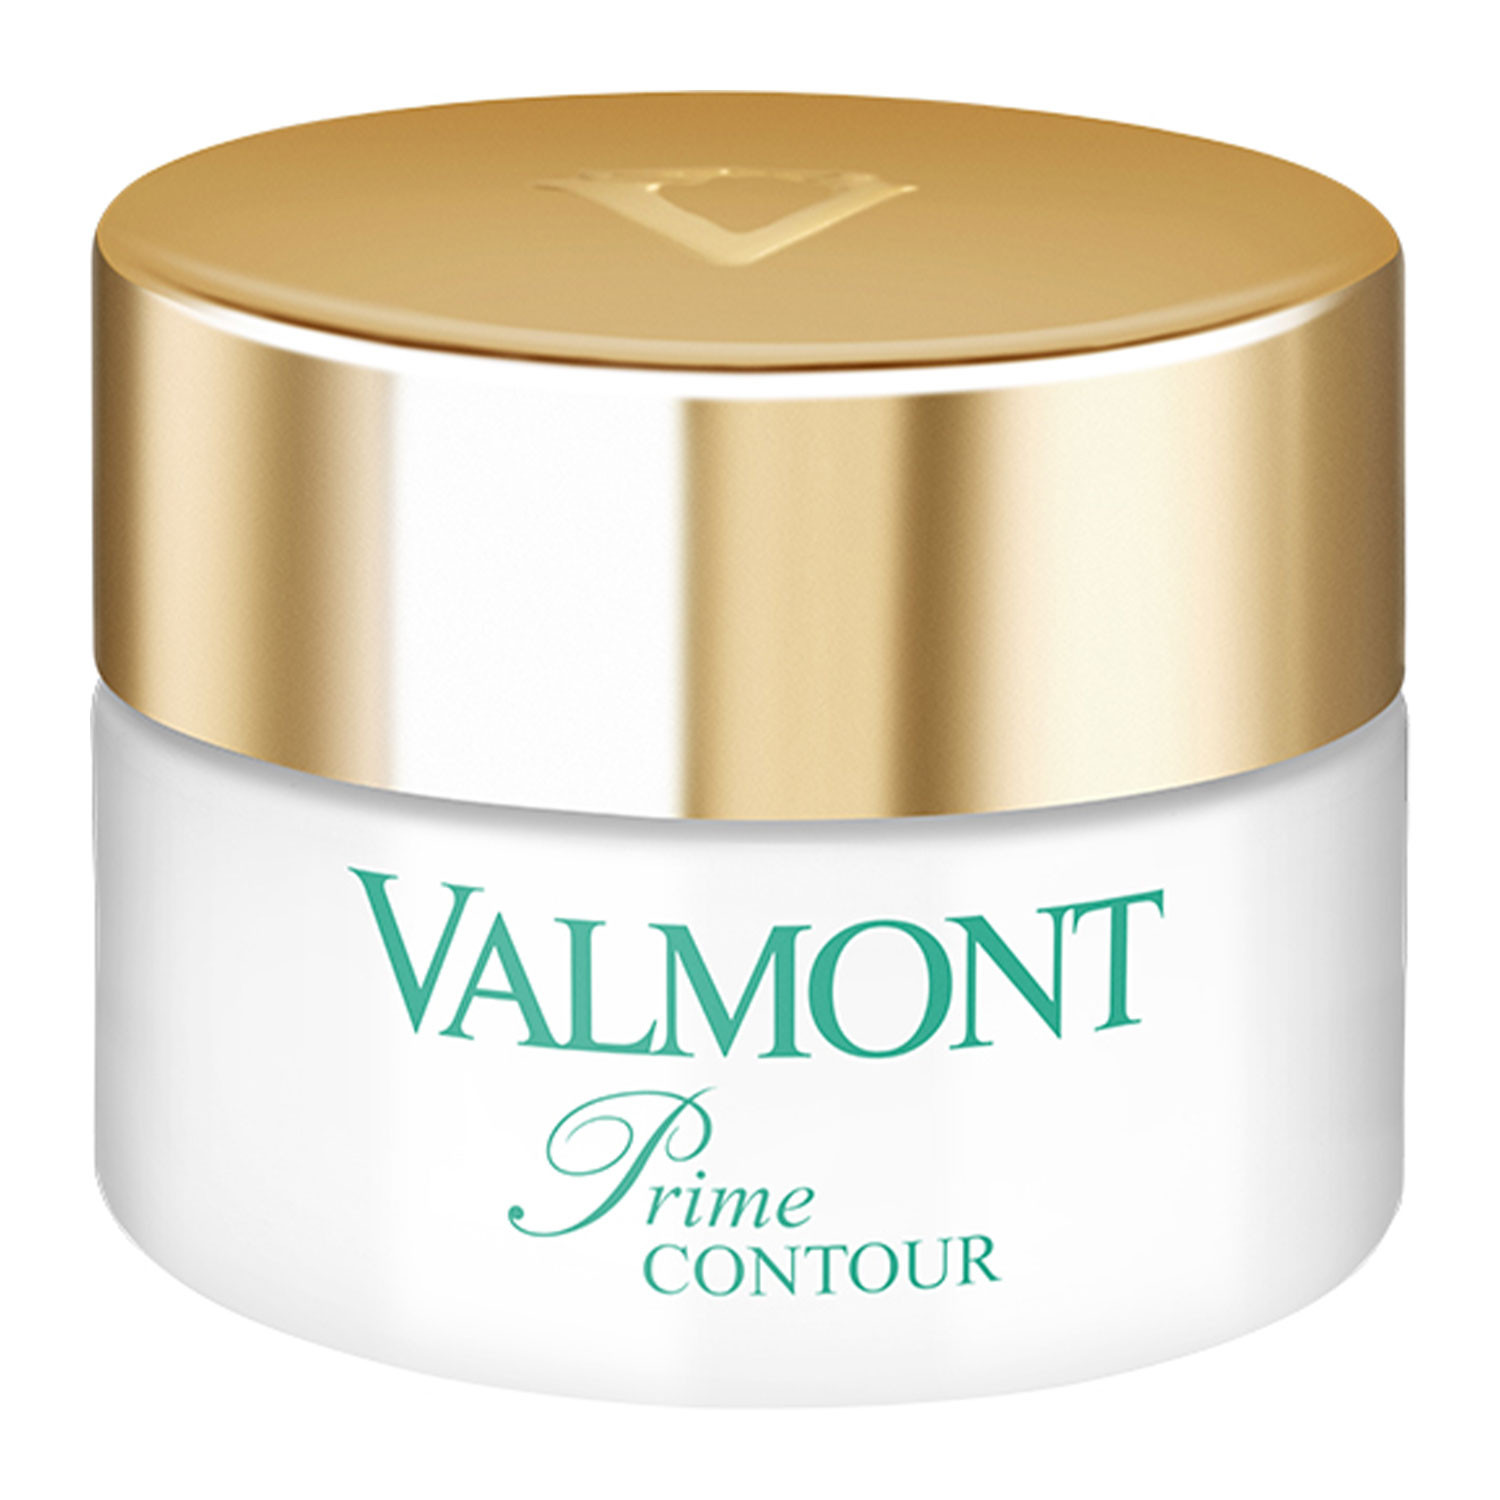 Valmont Prime Contour Премиум клеточный крем для кожи вокруг глаз и губ